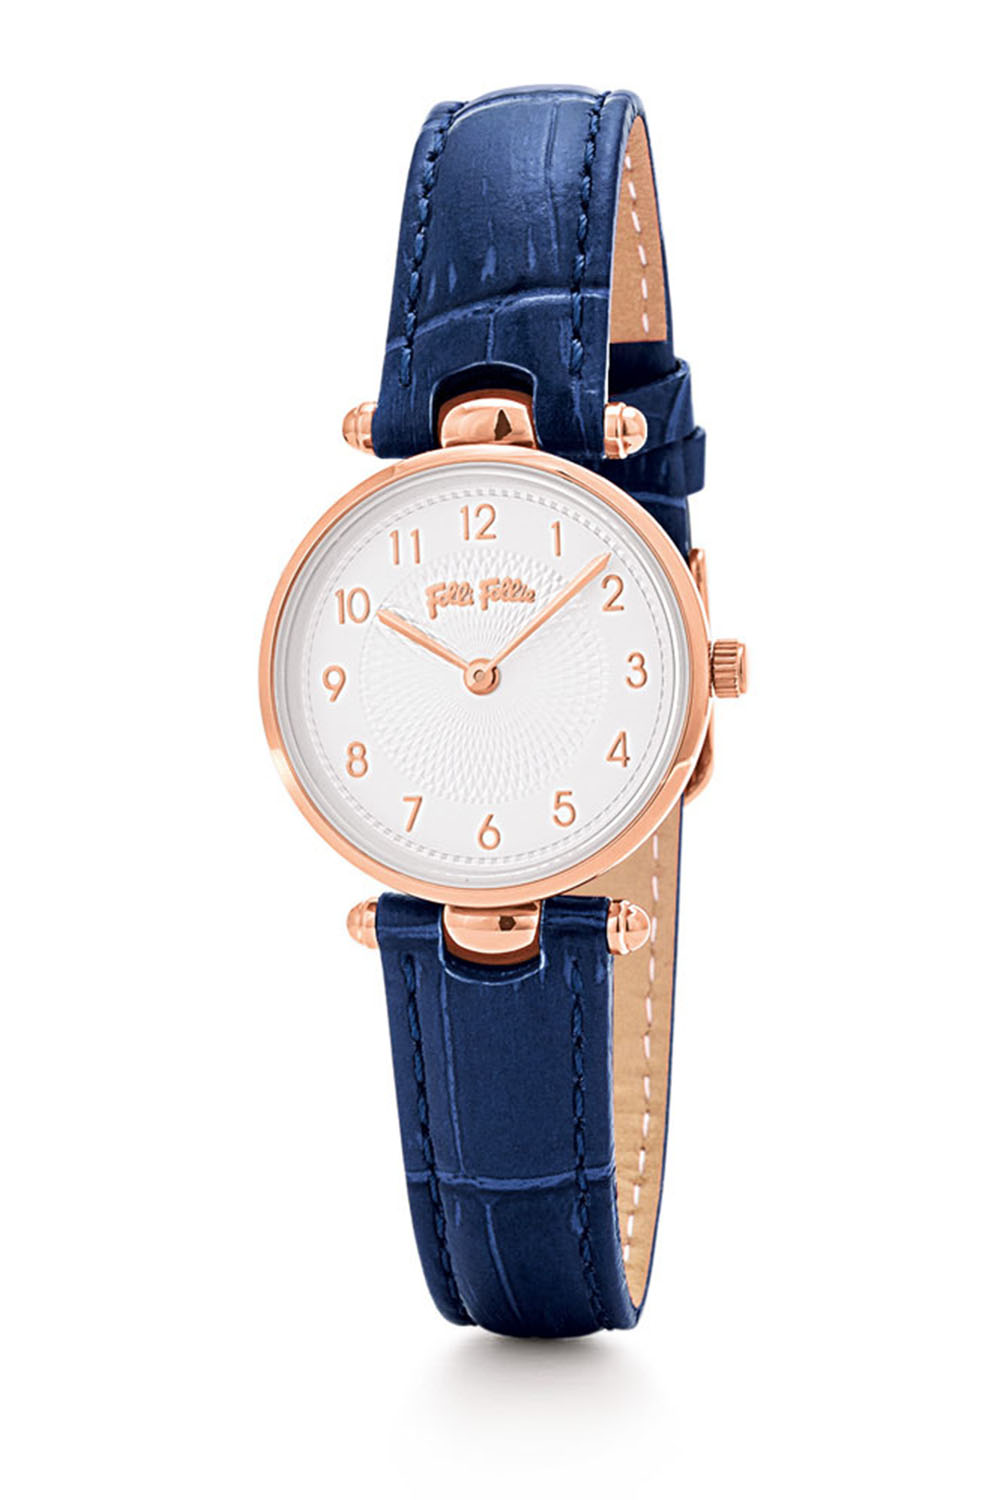 FOLLI FOLLIE – Γυναικείο ρολόι με δερμάτινο λουράκι FOLLI FOLLIE LADY CLUB μπλε WF17R014SSS-DB